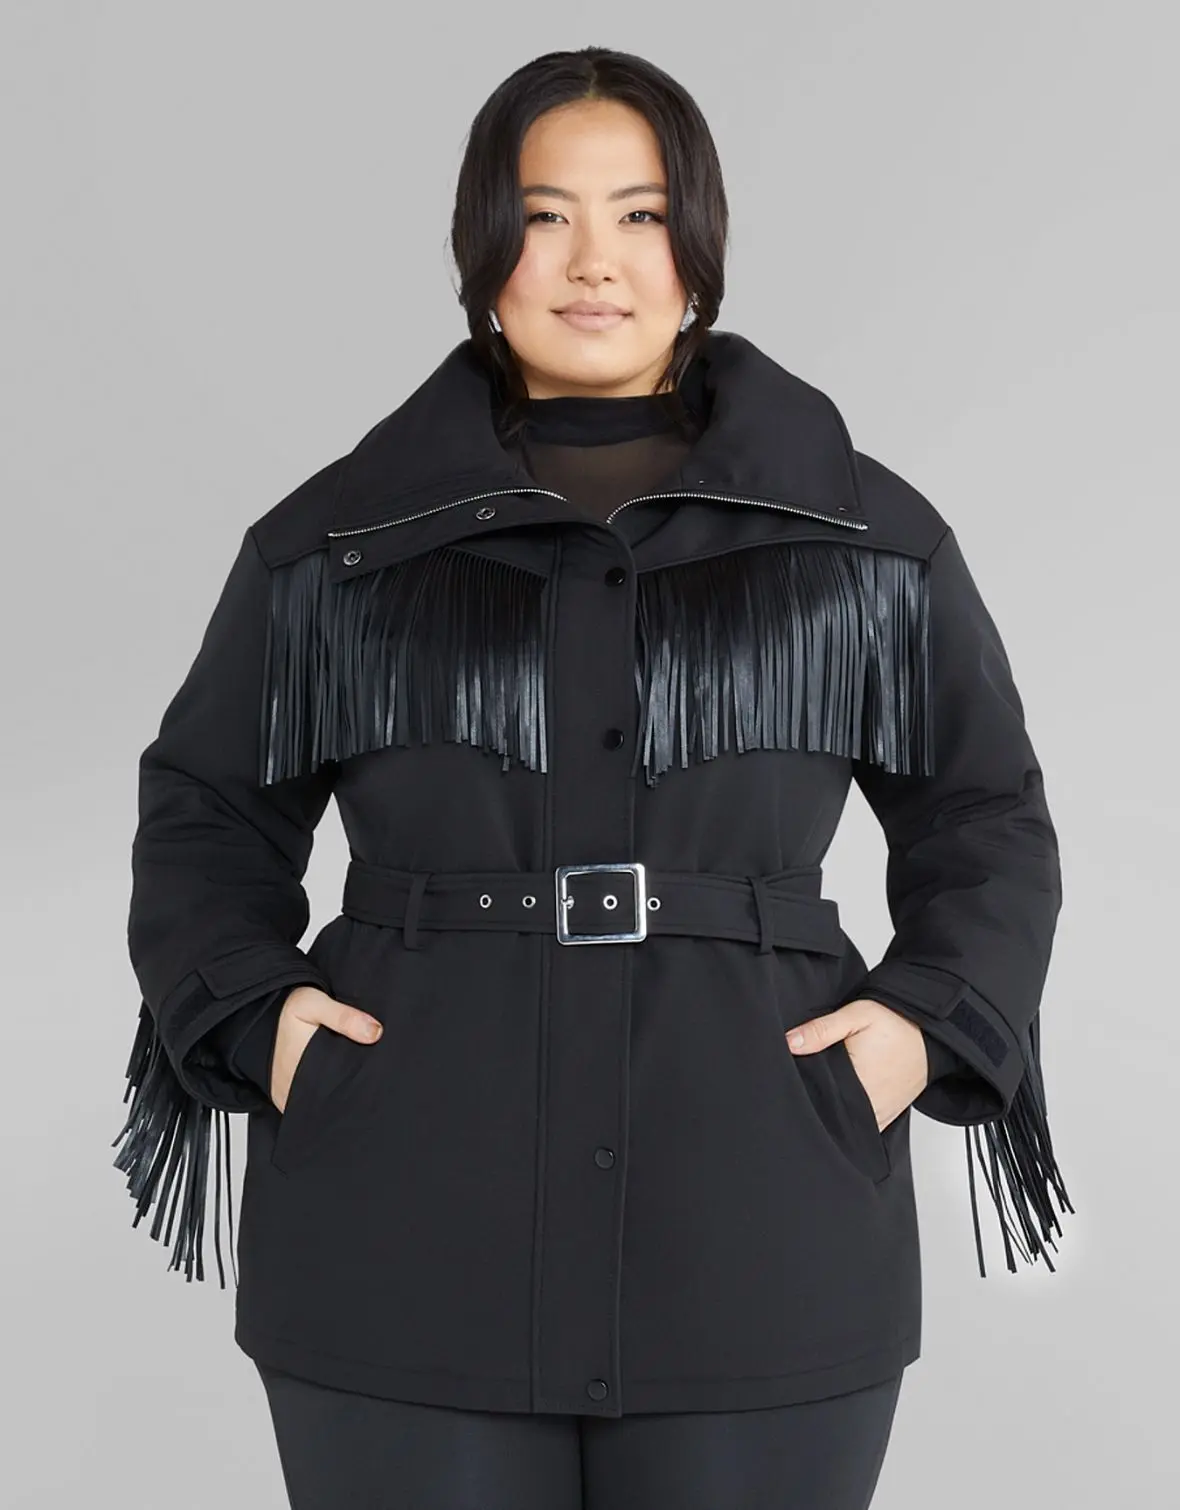 Woman wearing plus size winter jacket